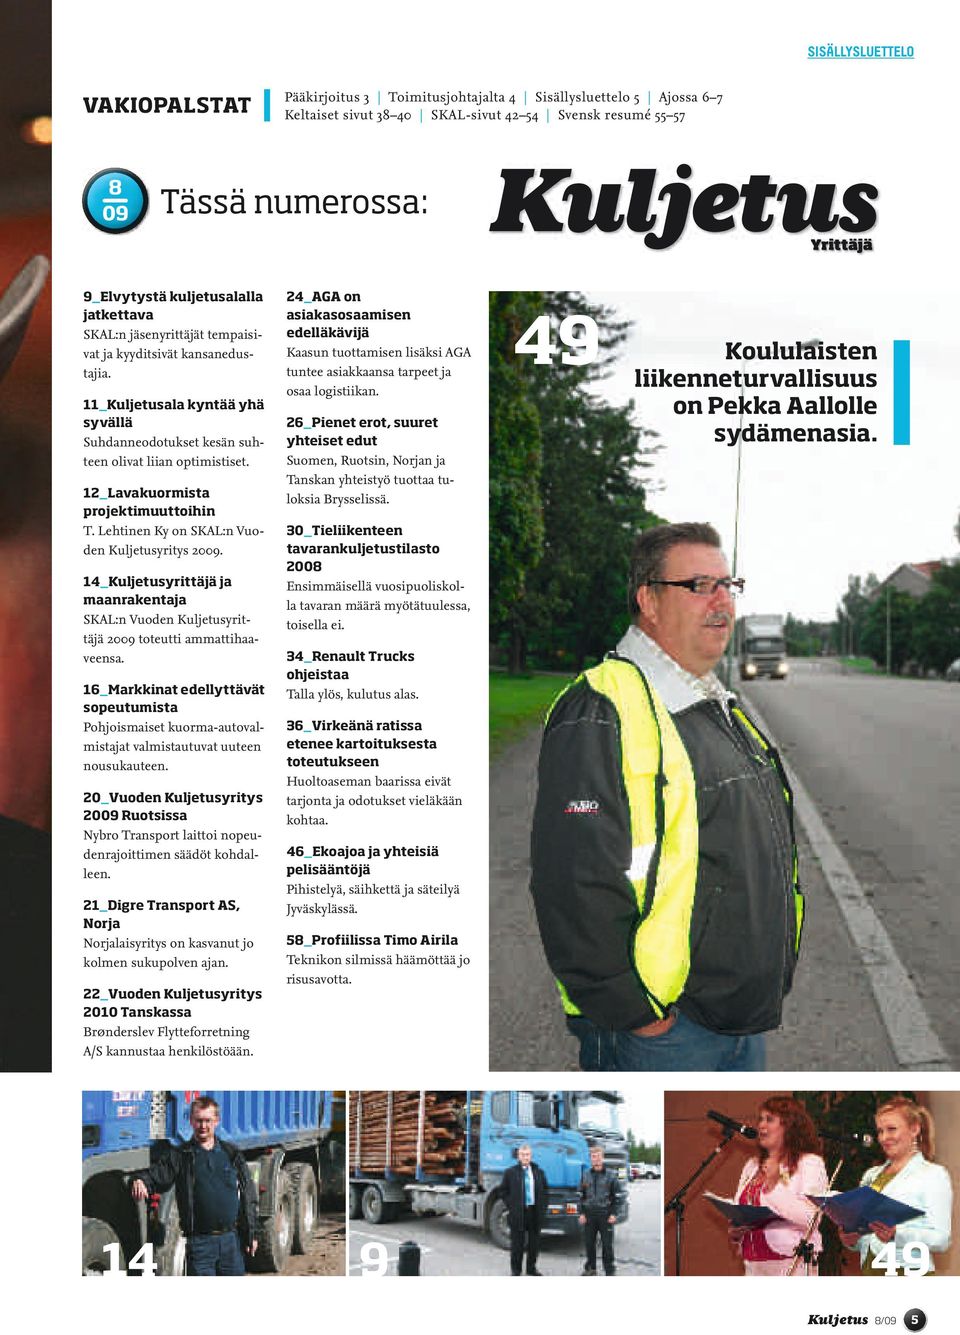 12_Lavakuormista projektimuuttoihin T. Lehtinen Ky on SKAL:n Vuoden Kuljetusyritys 2009. 14_Kuljetusyrittäjä ja maanrakentaja SKAL:n Vuoden Kuljetusyrittäjä 2009 toteutti ammattihaaveensa.